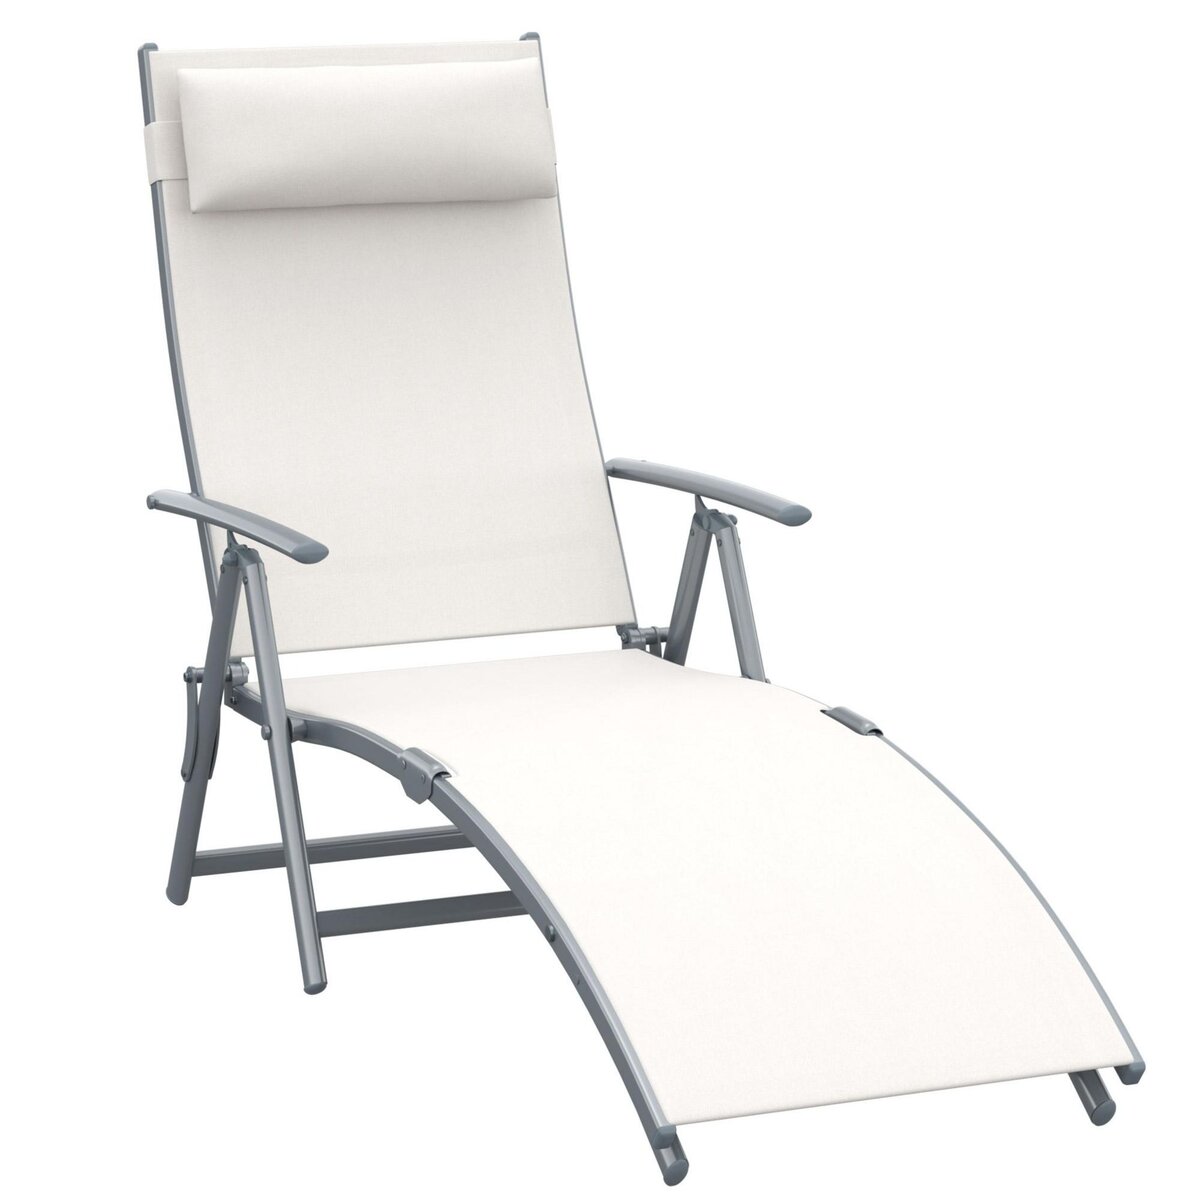 OUTSUNNY Outsunny transat chaise longue bain de soleil pliable dossier inclinable multi-positions têtière fournie 137L x 64l x 101H cm métal époxy textilène beige